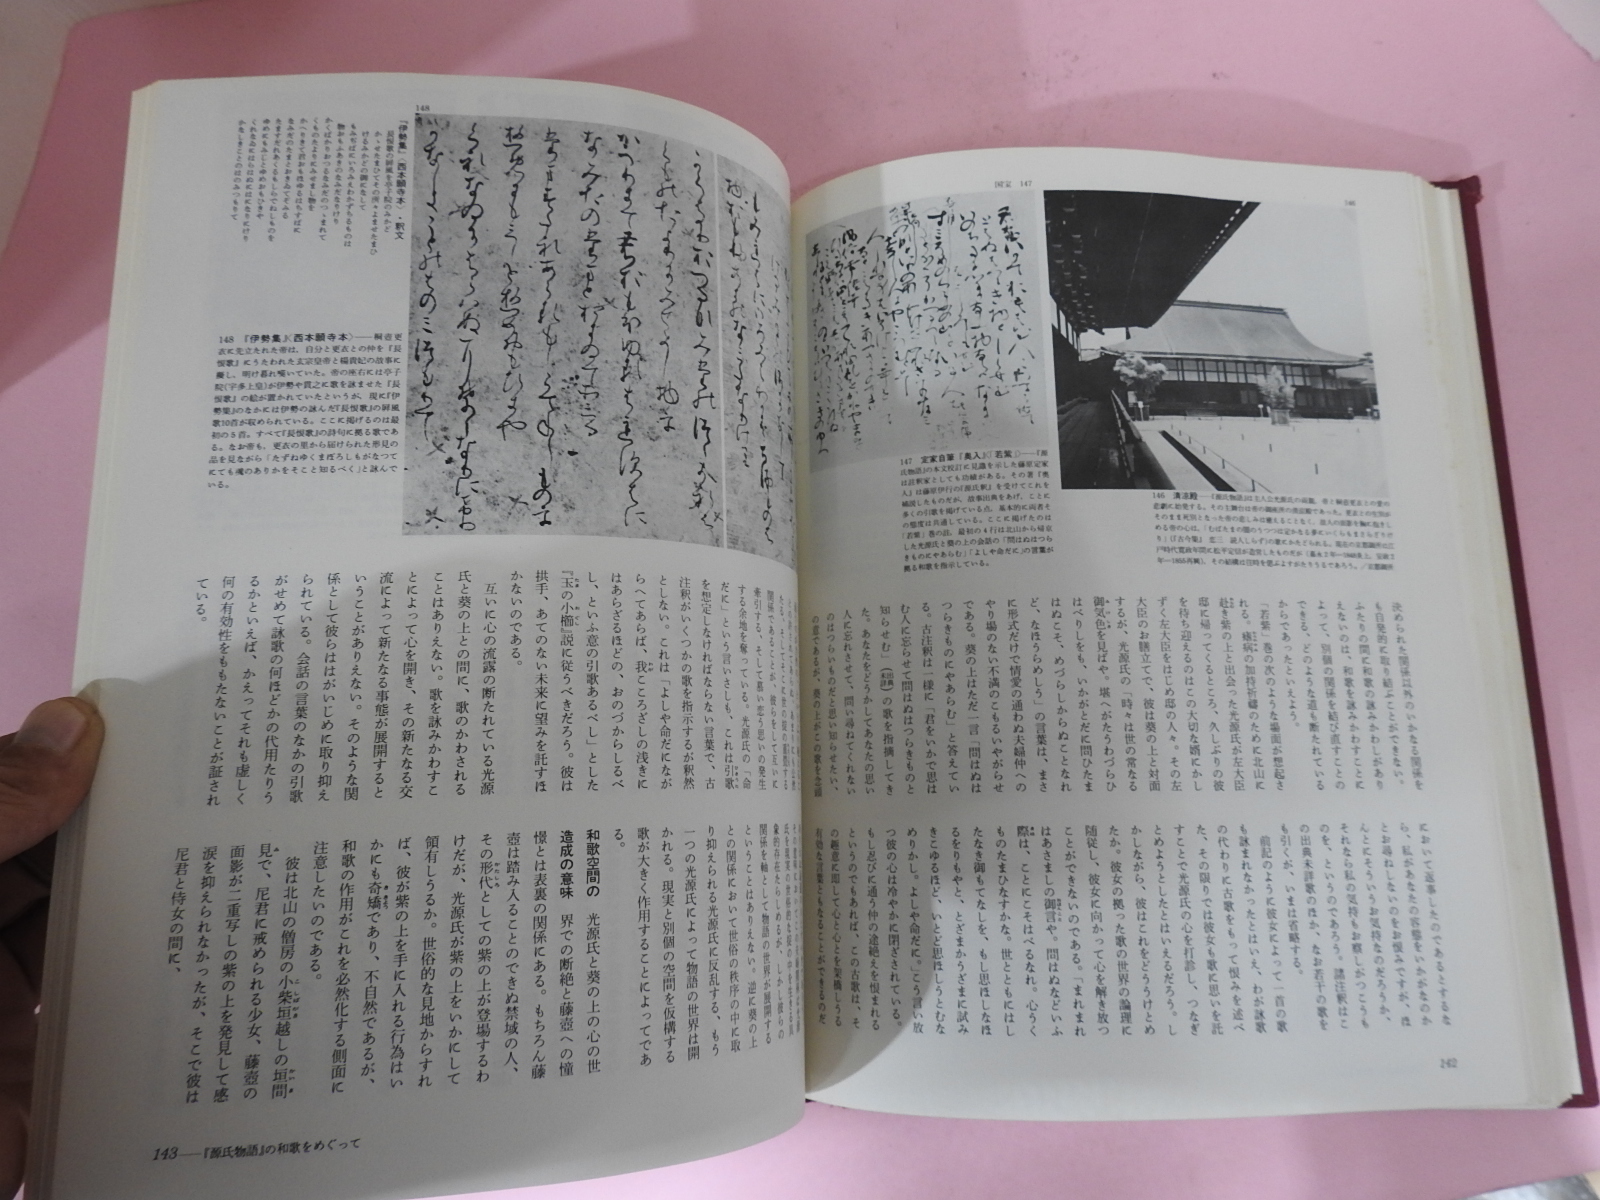 1978년 일본의 고전 원씨물어(源氏物語)